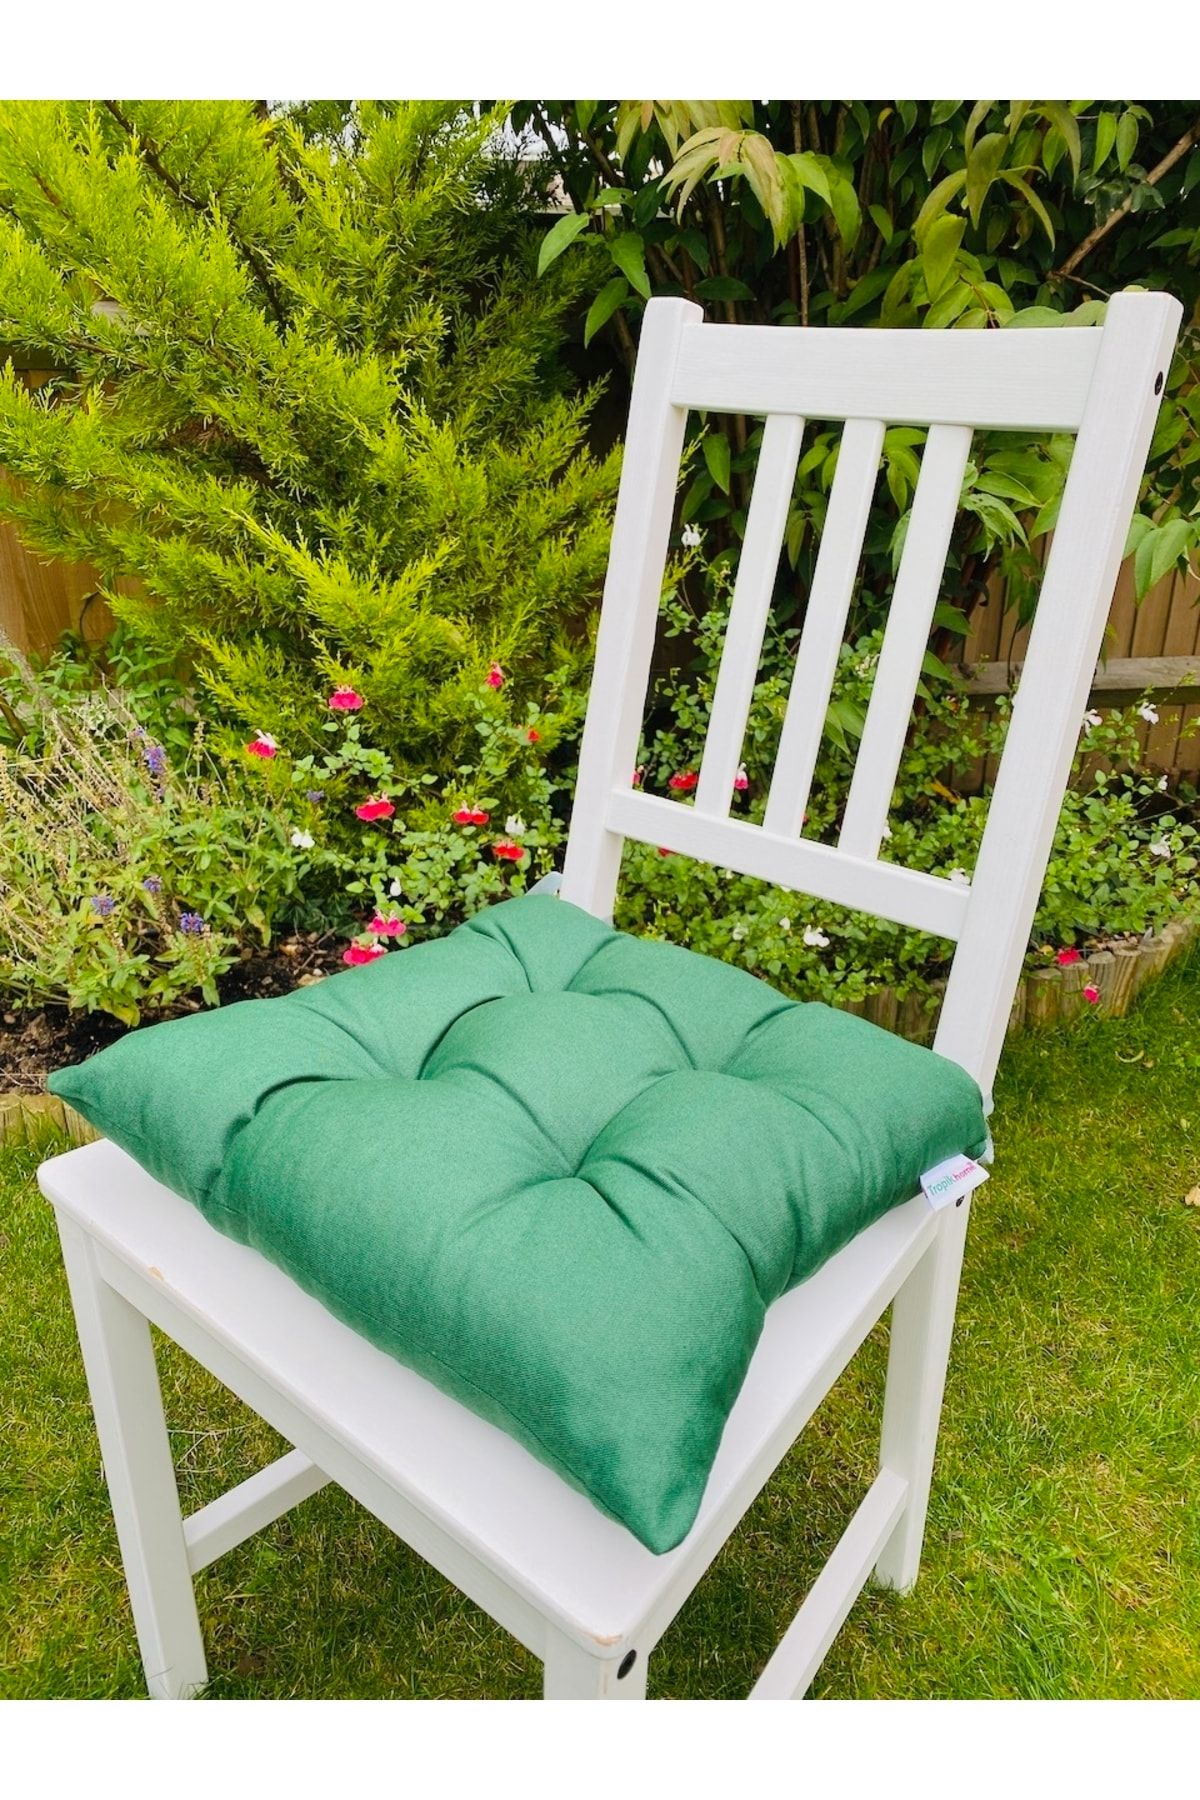 Tropikhome Bahçe Sandalye Minderi Yeşil Renk Pamuklu Kumaş Pofidik Kare Dekoratif Sandalye Minderi 35x35 Cm